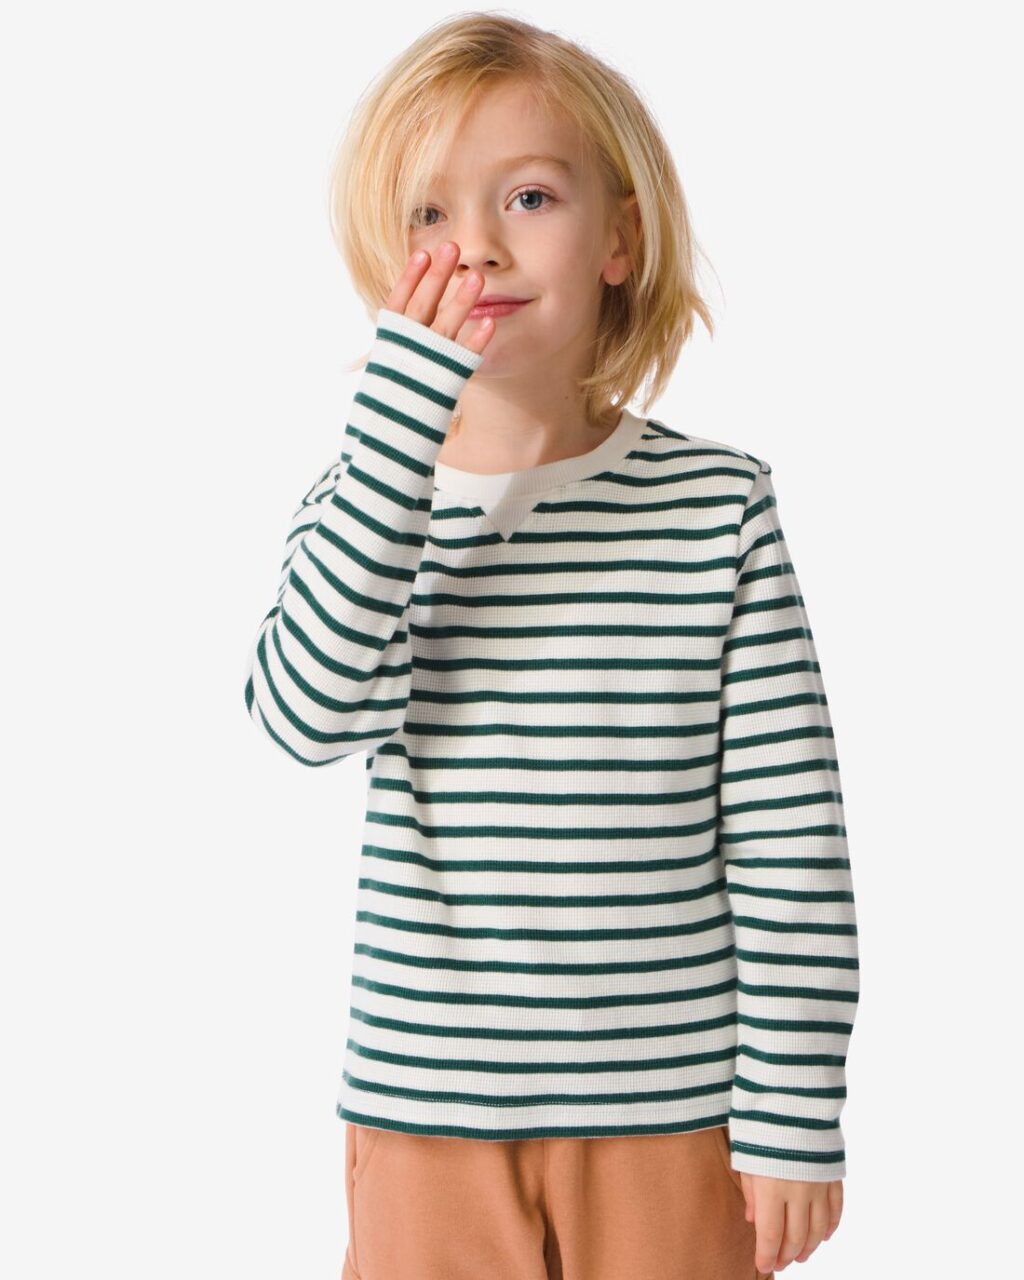 HEMA Kinder Shirt Met Strepen Groen (groen) ~ Spinze.nl